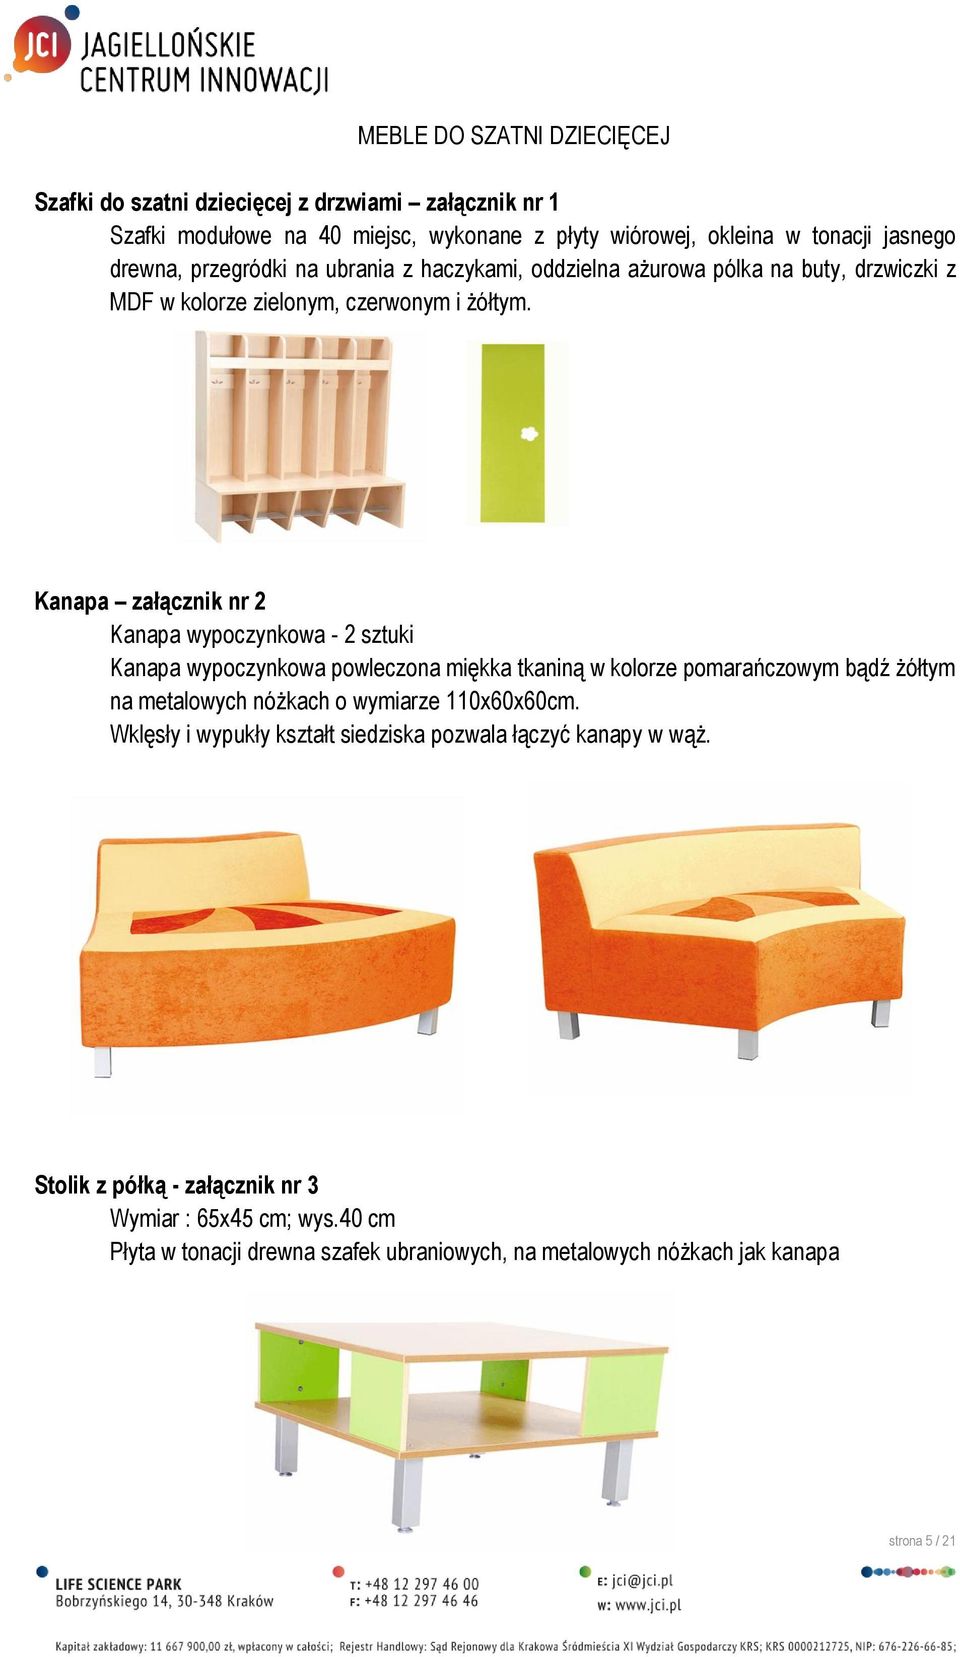 Kanapa załącznik nr 2 Kanapa wypoczynkowa - 2 sztuki Kanapa wypoczynkowa powleczona miękka tkaniną w kolorze pomarańczowym bądź żółtym na metalowych nóżkach o wymiarze